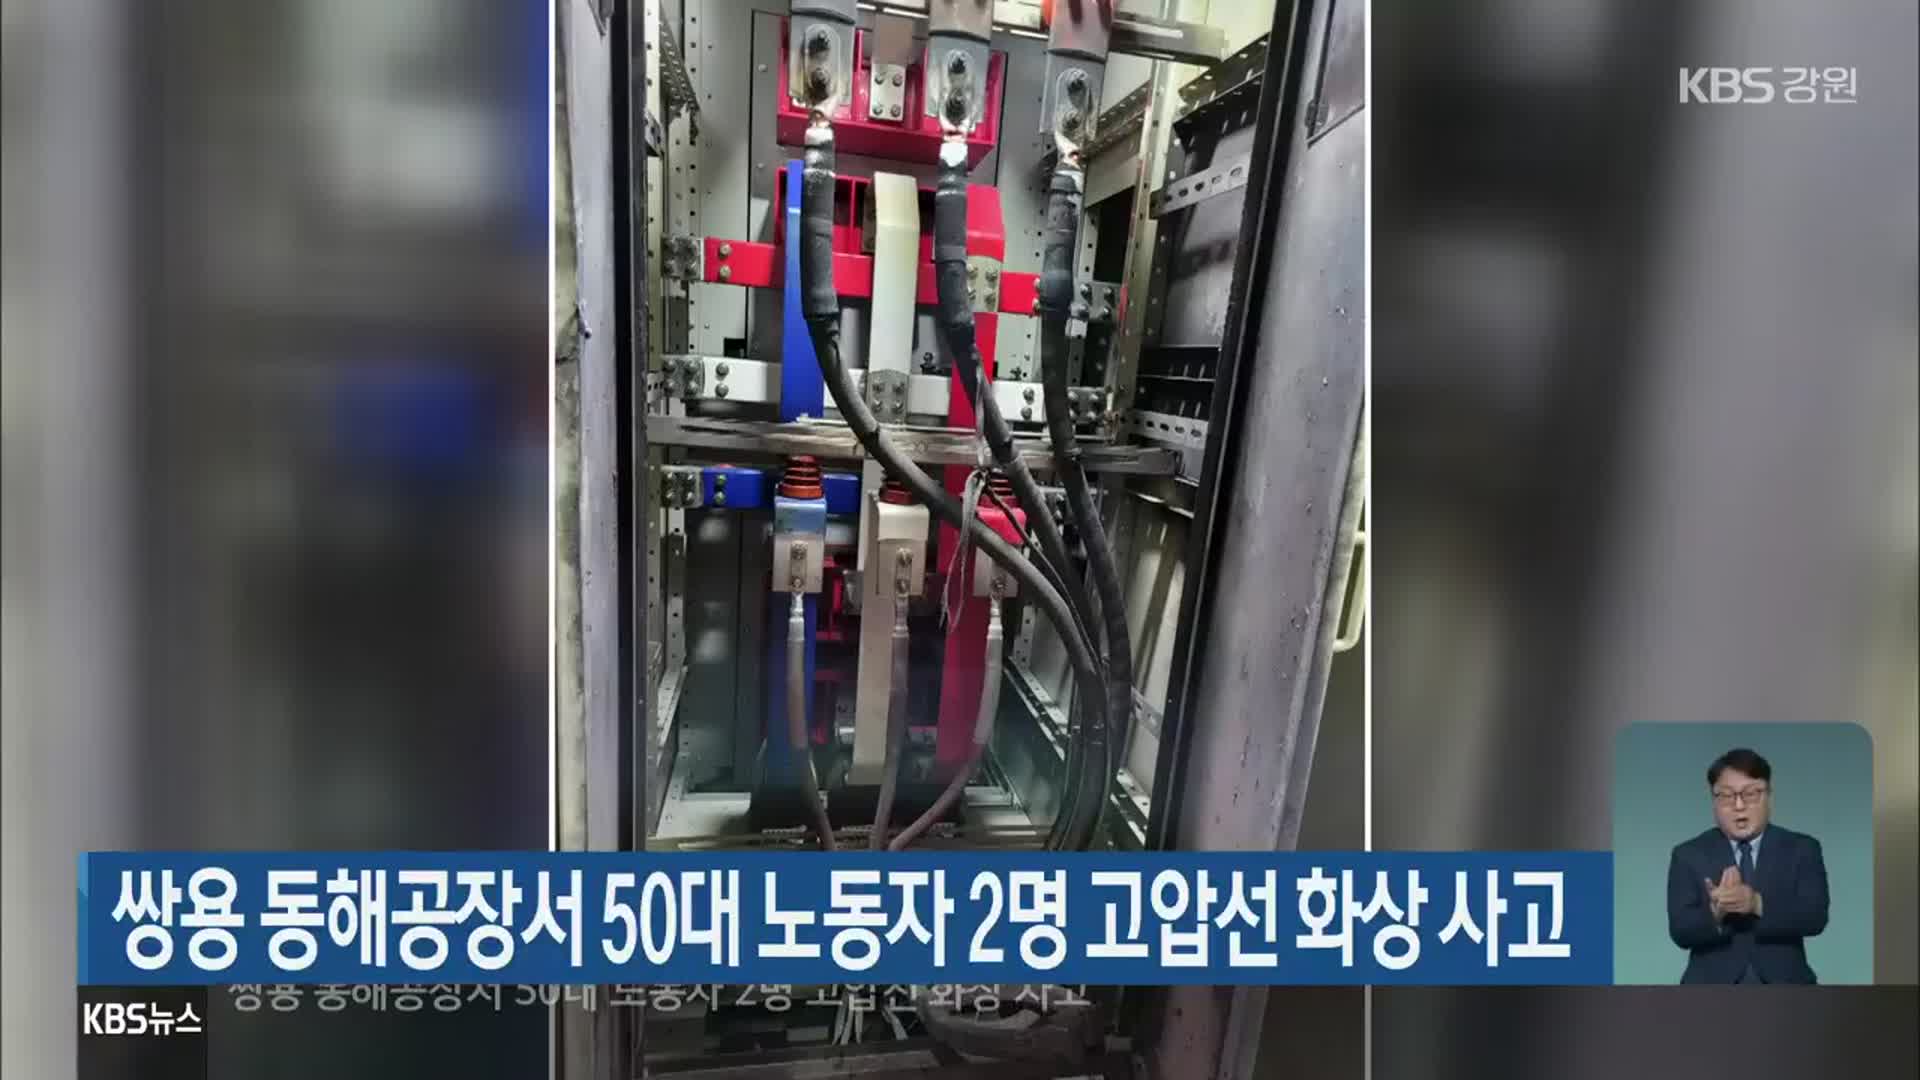 쌍용 동해공장서 50대 노동자 2명 고압선 화상 사고